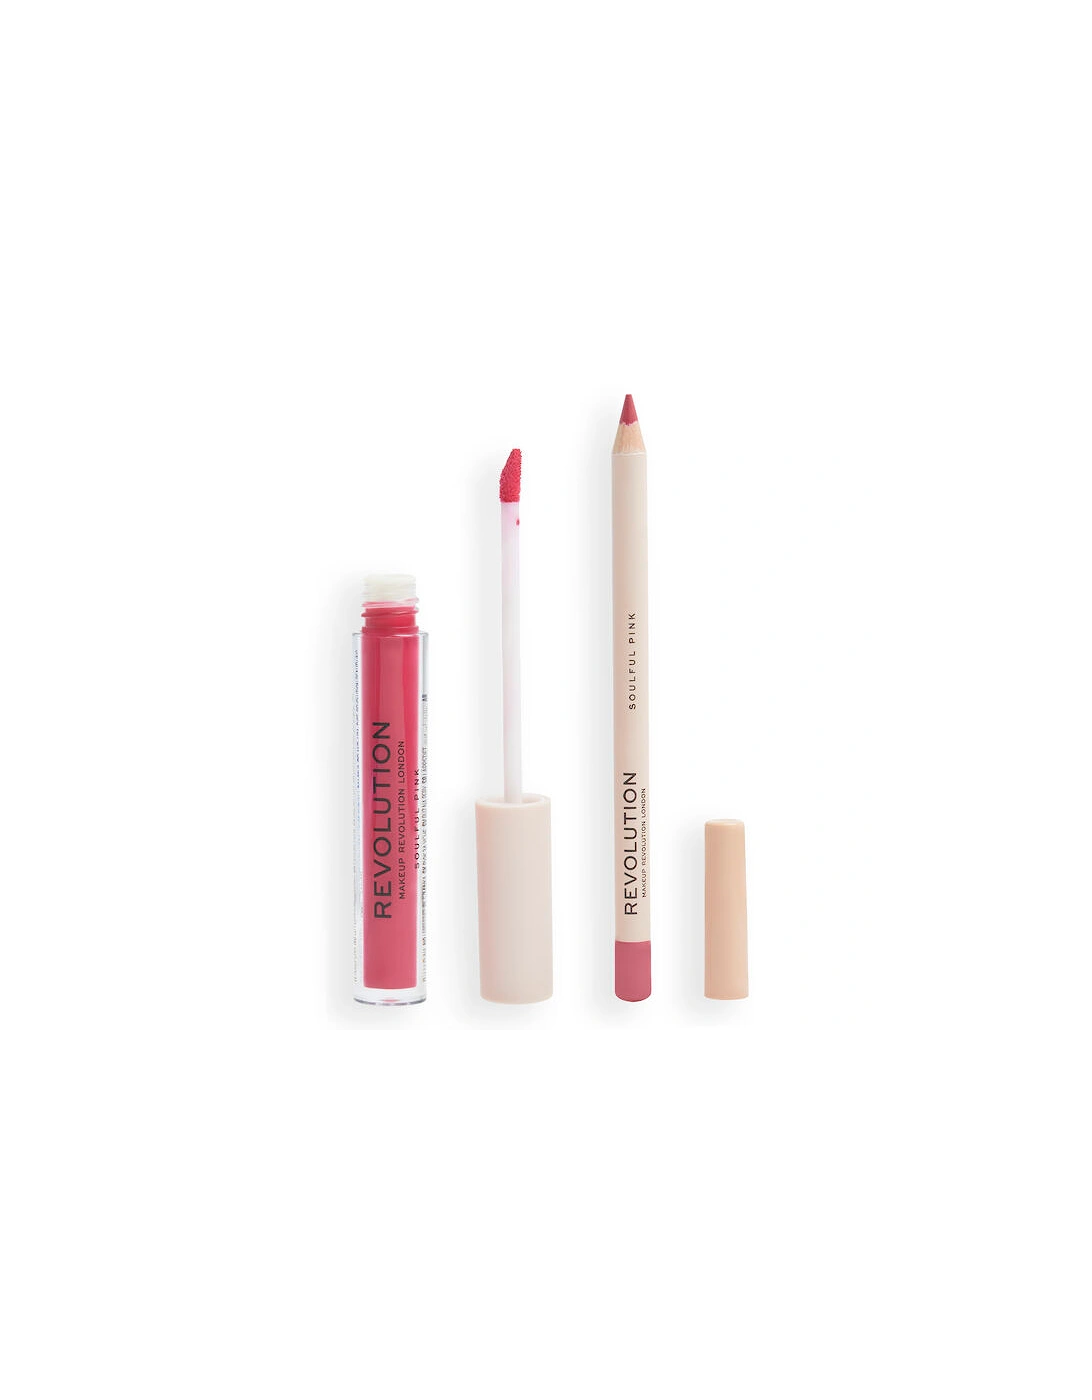 Makeup Lip Contour Kit Soulful Pink, 2 of 1